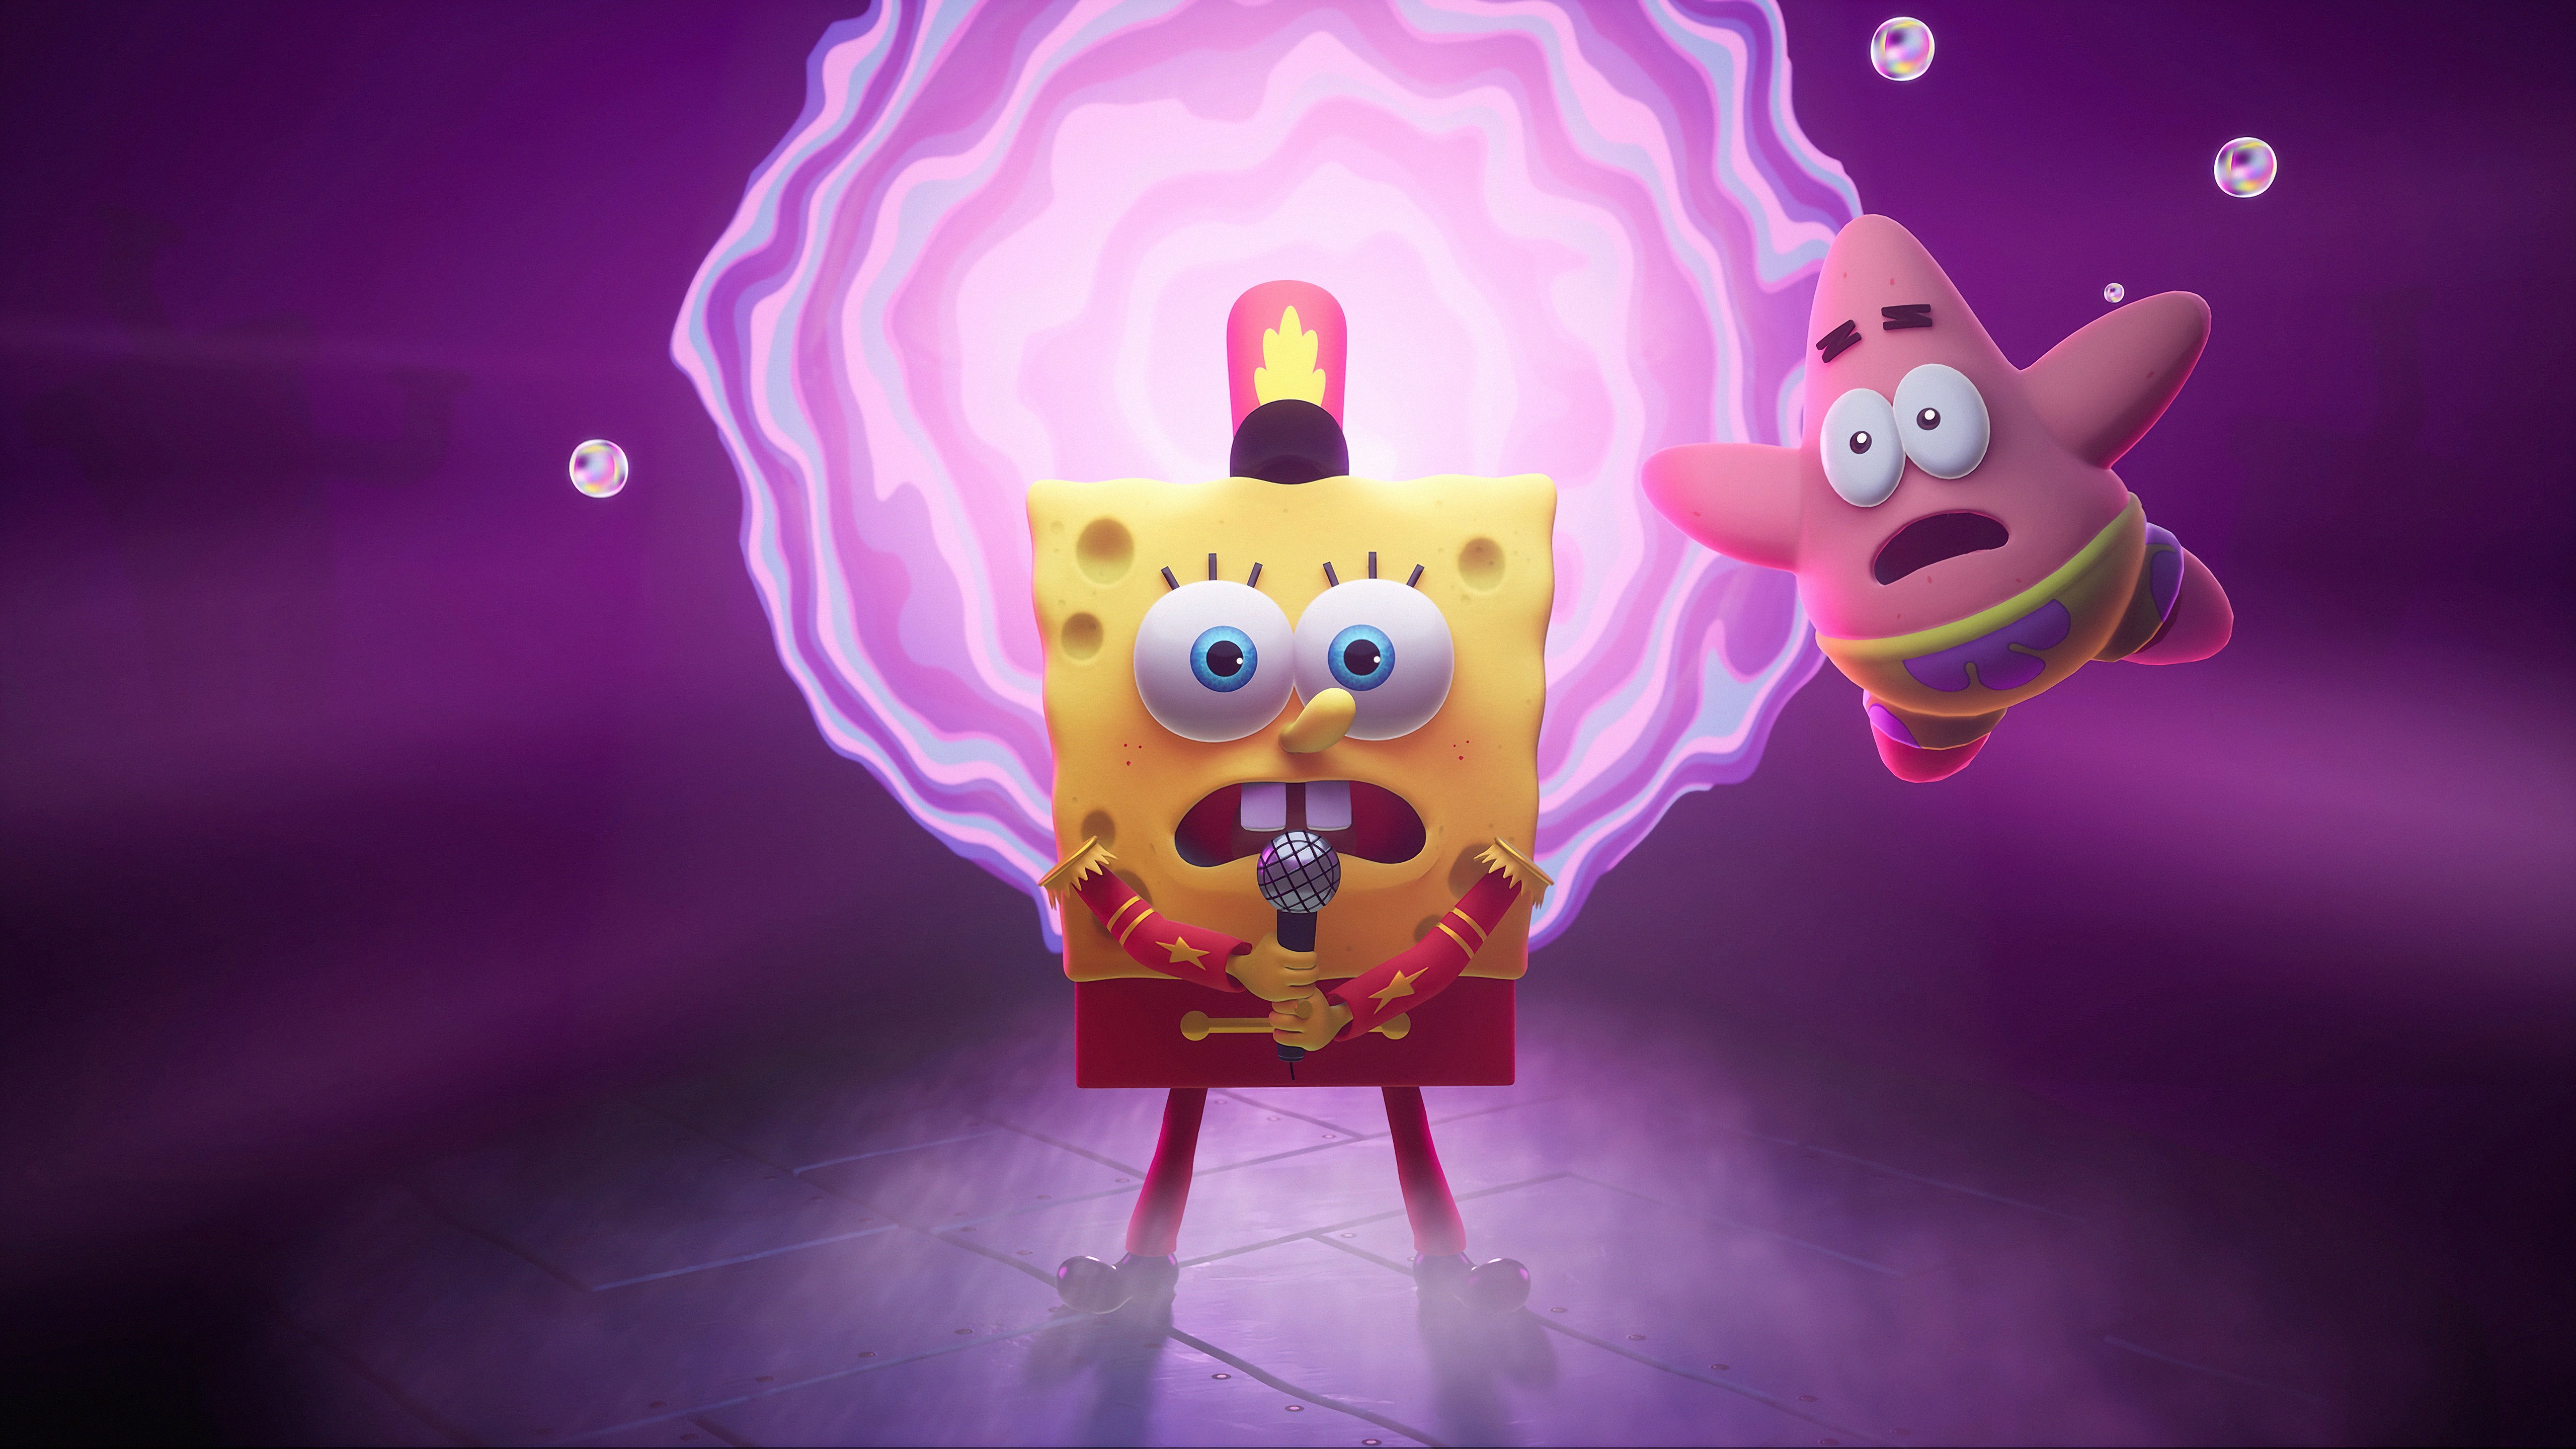 Wallpaper Spongebob Squarepants singing in The cosmic Shake